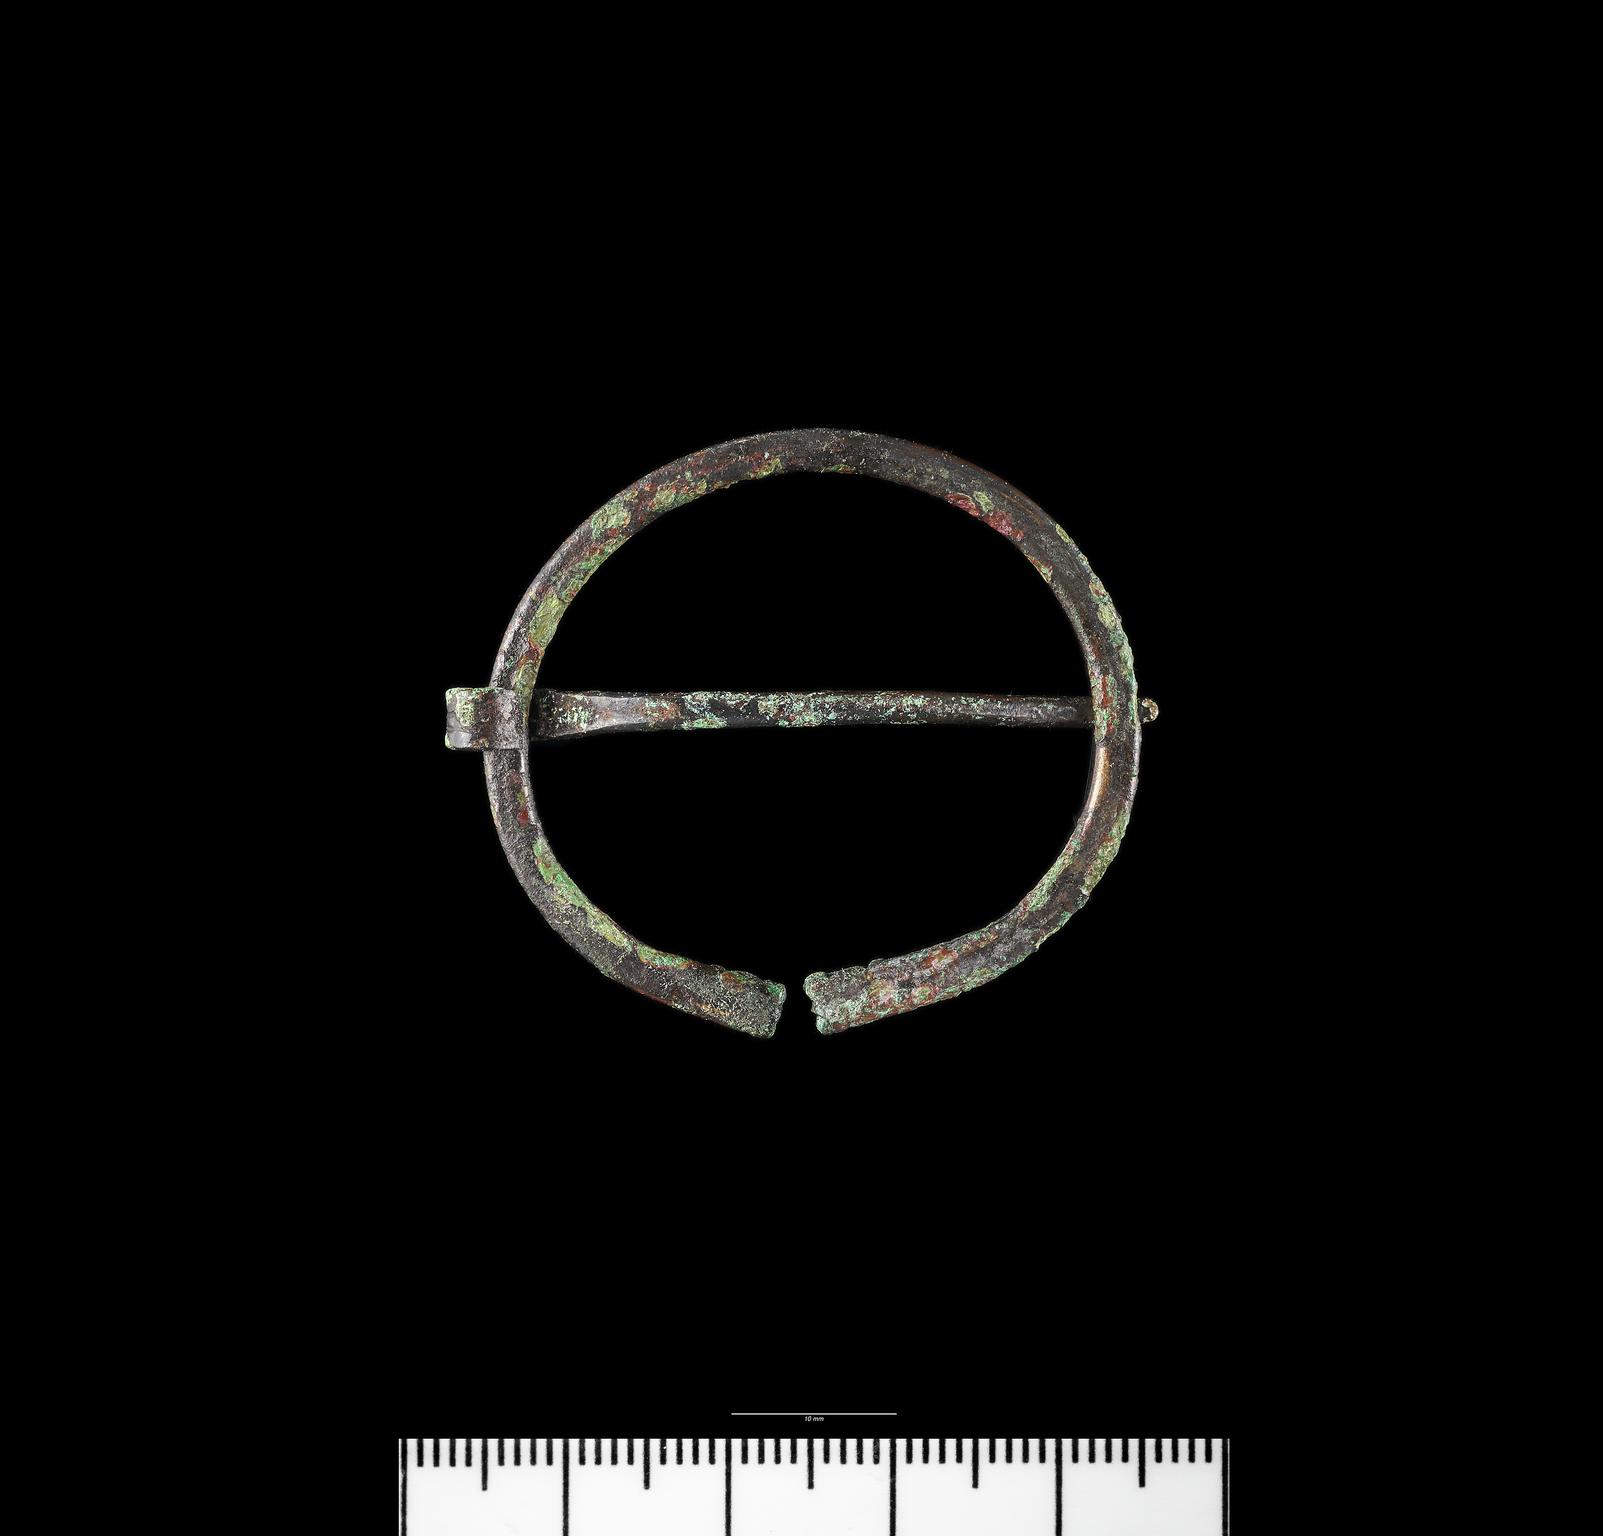 Roman copper alloy penannular brooch